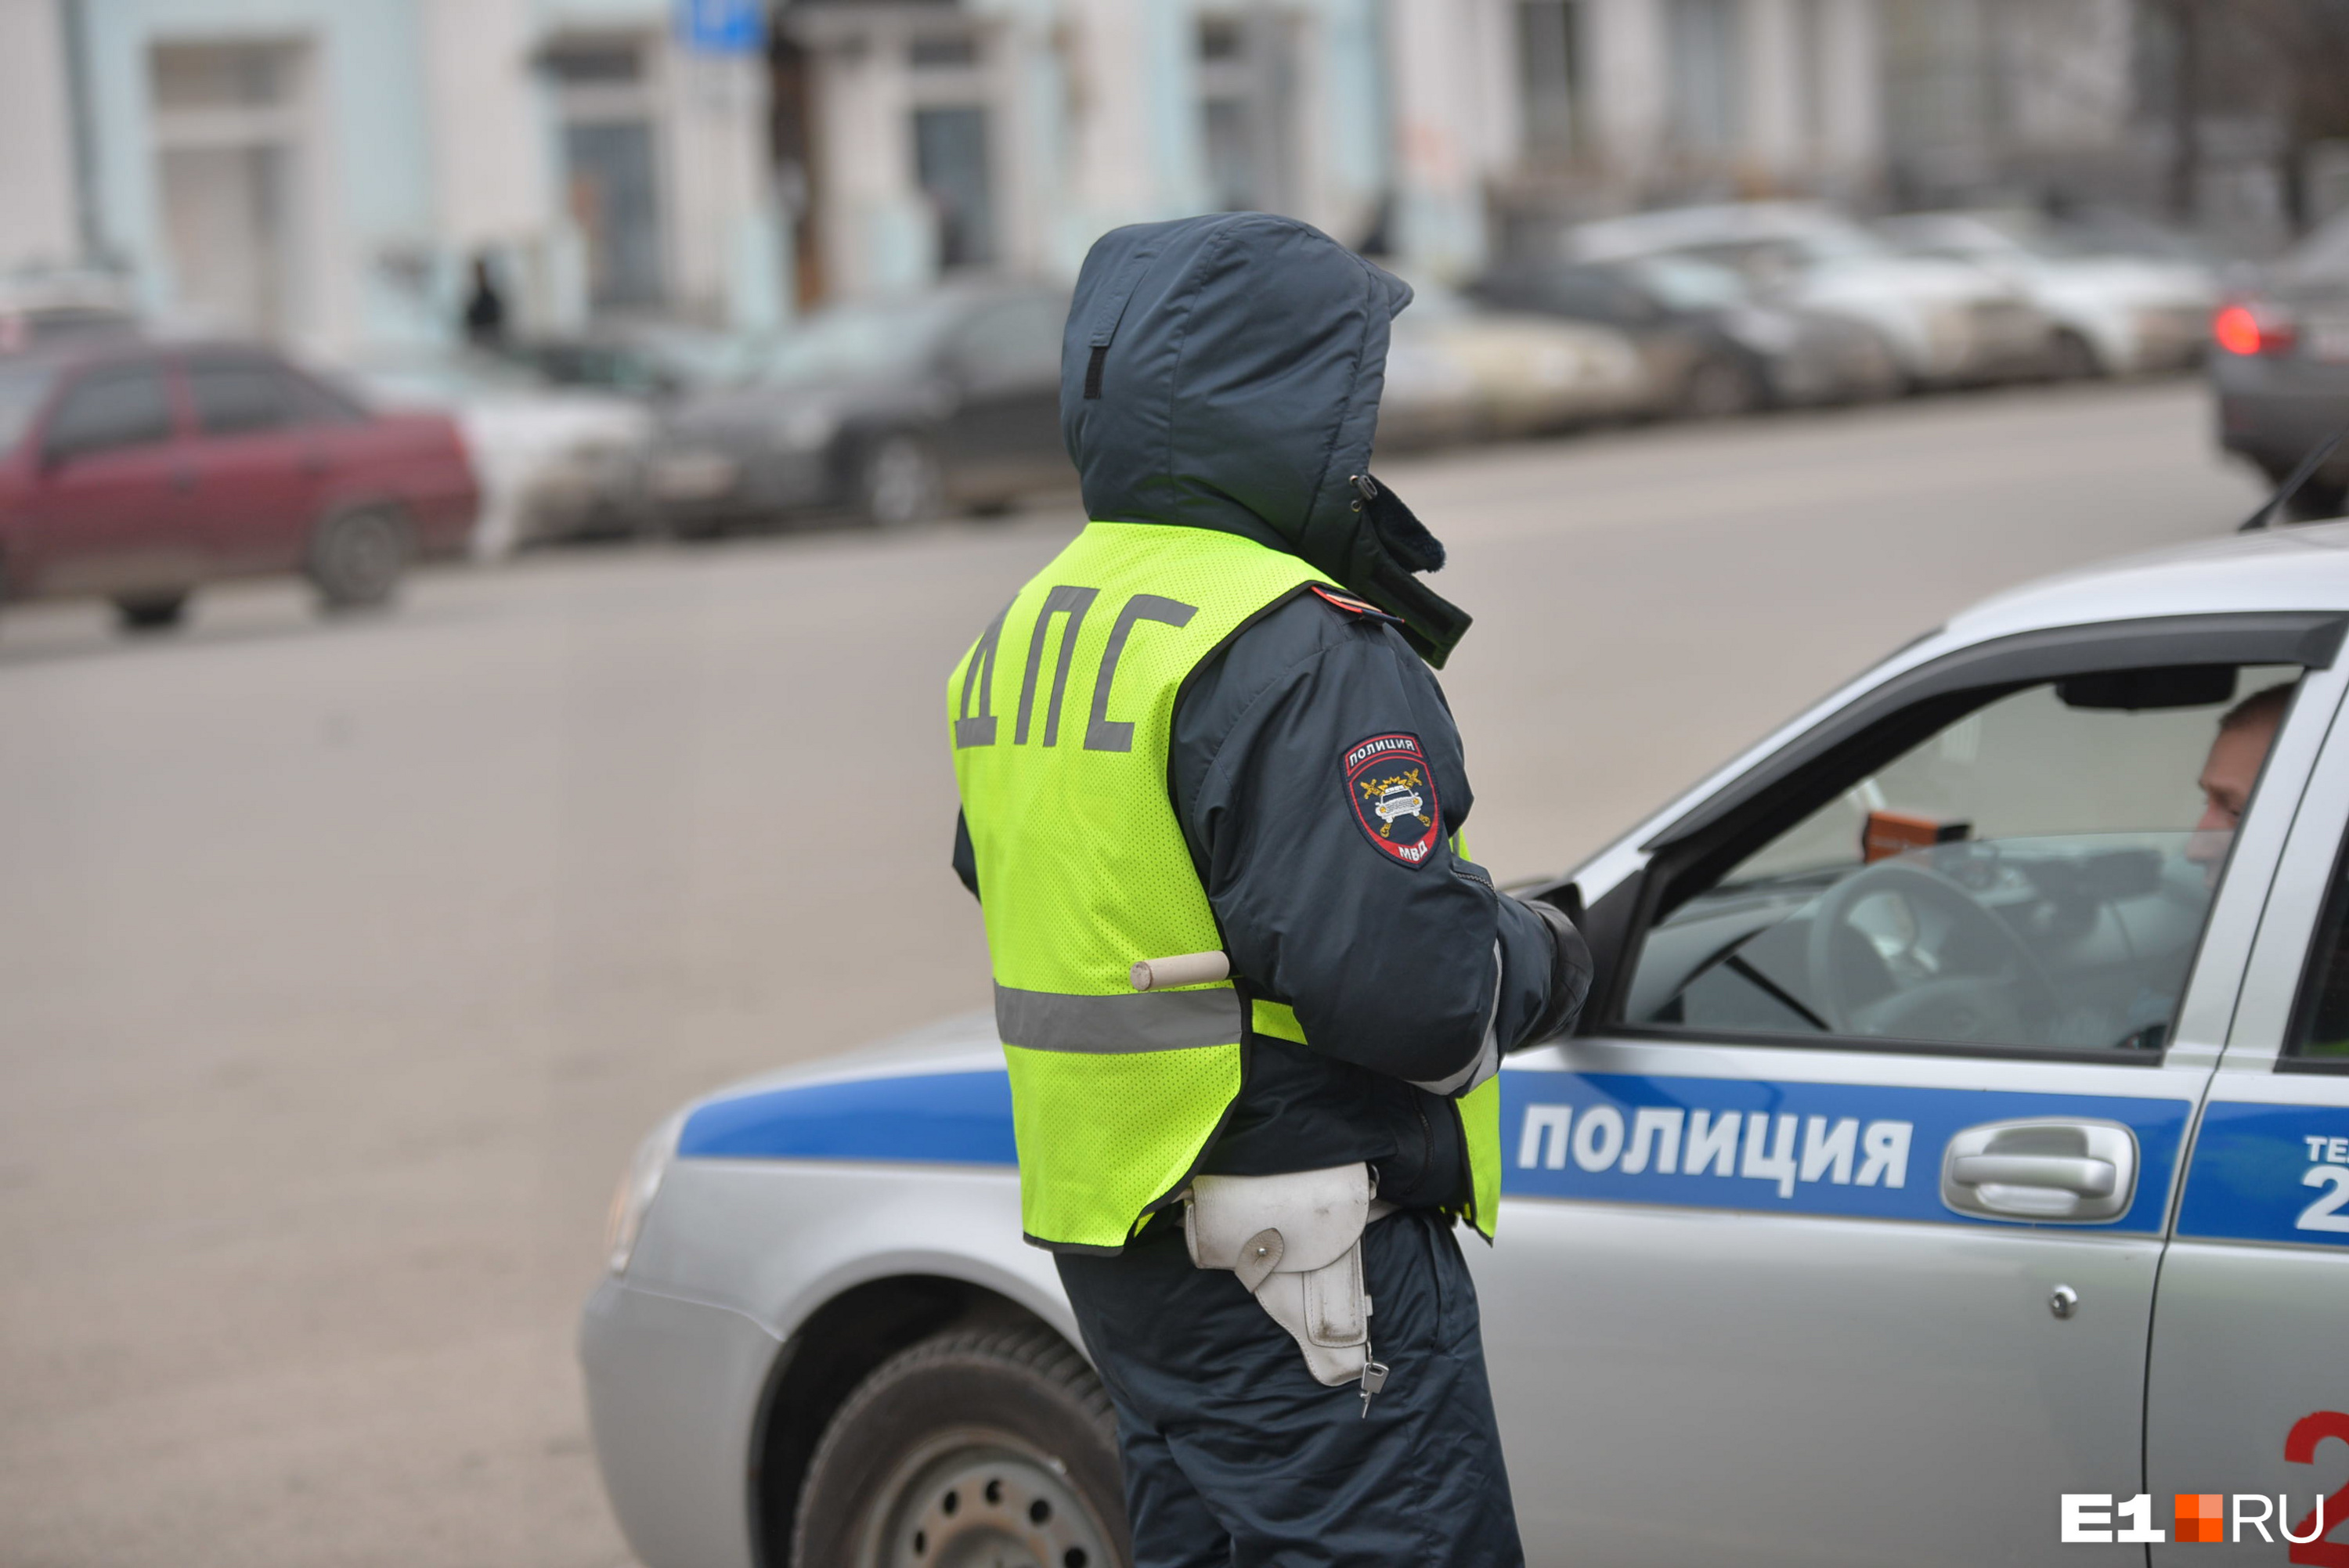 Трое гаишников из Екатеринбурга брали взятки у пьяных водителей. Сколько стоило «договориться»?